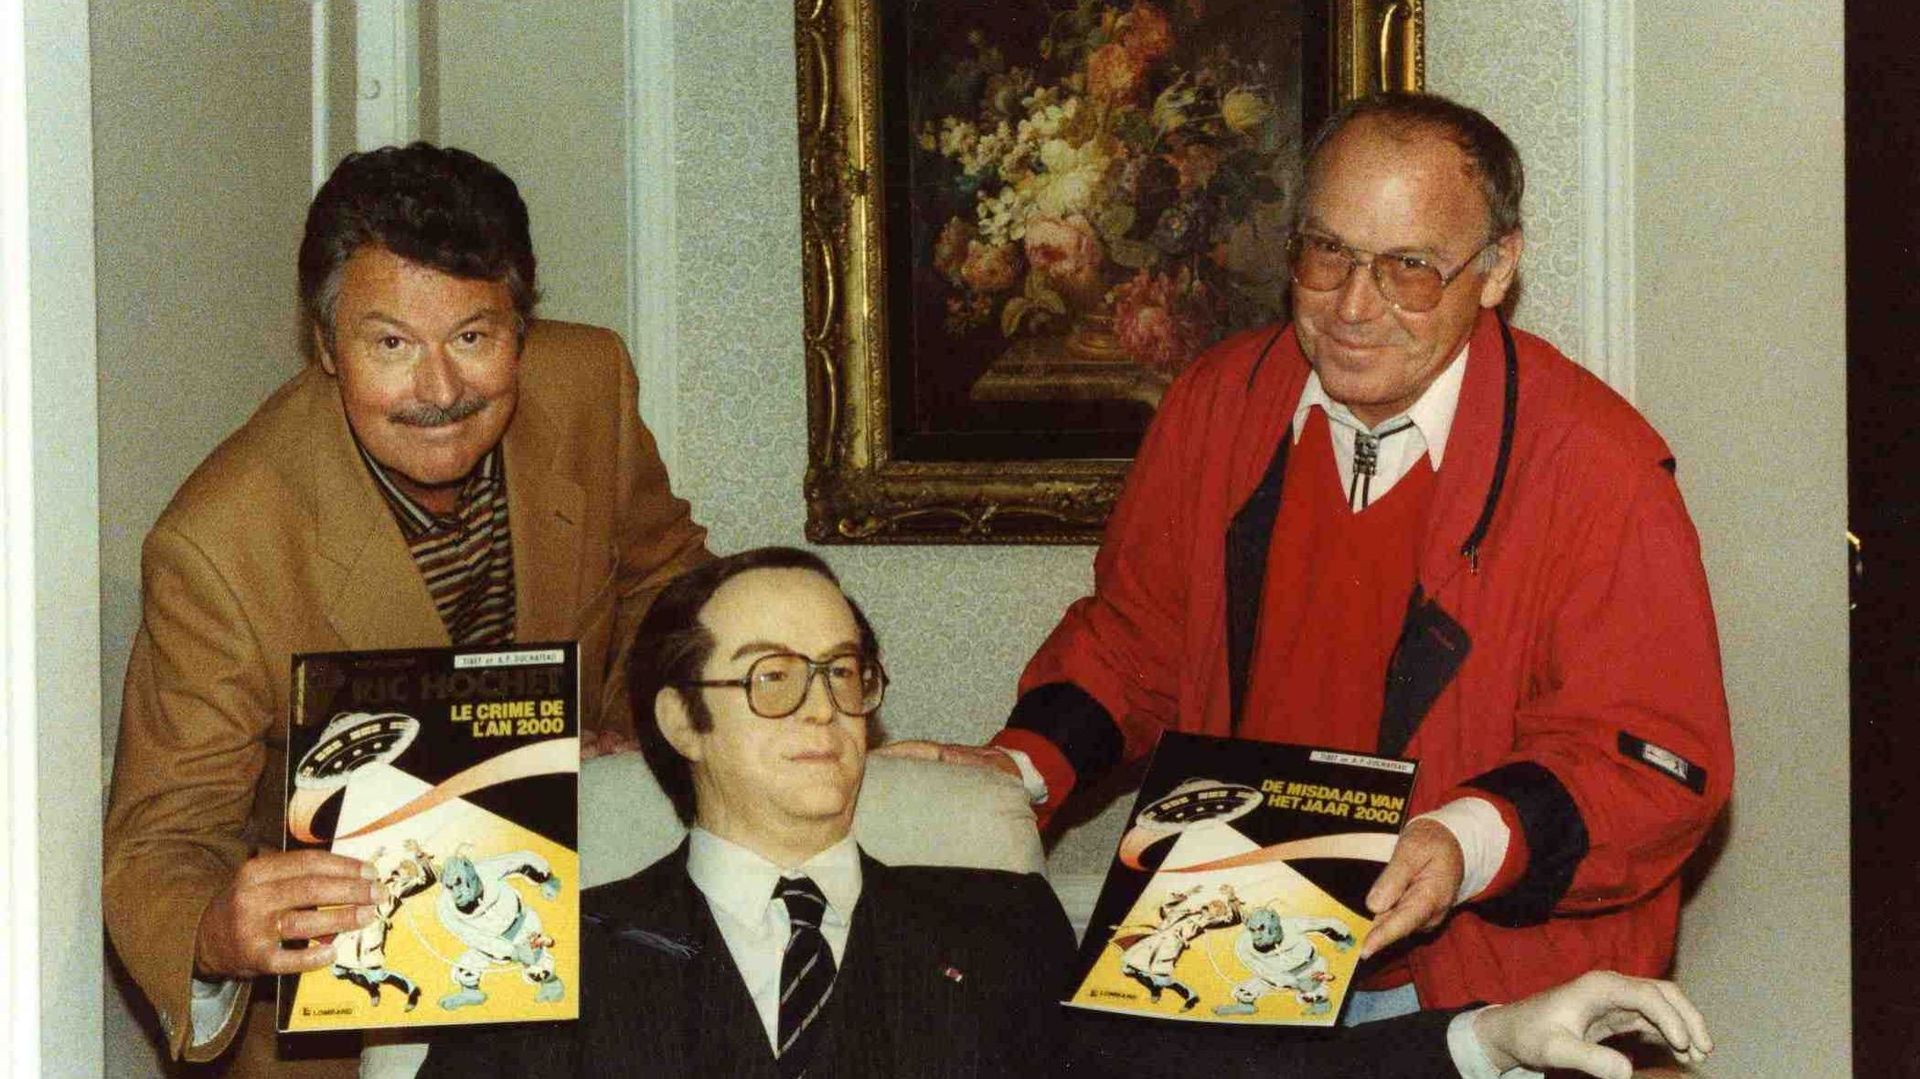 Le scénariste André-Paul Duchâteau (ici à gauche de la photo) est décédé le 26 août 2020